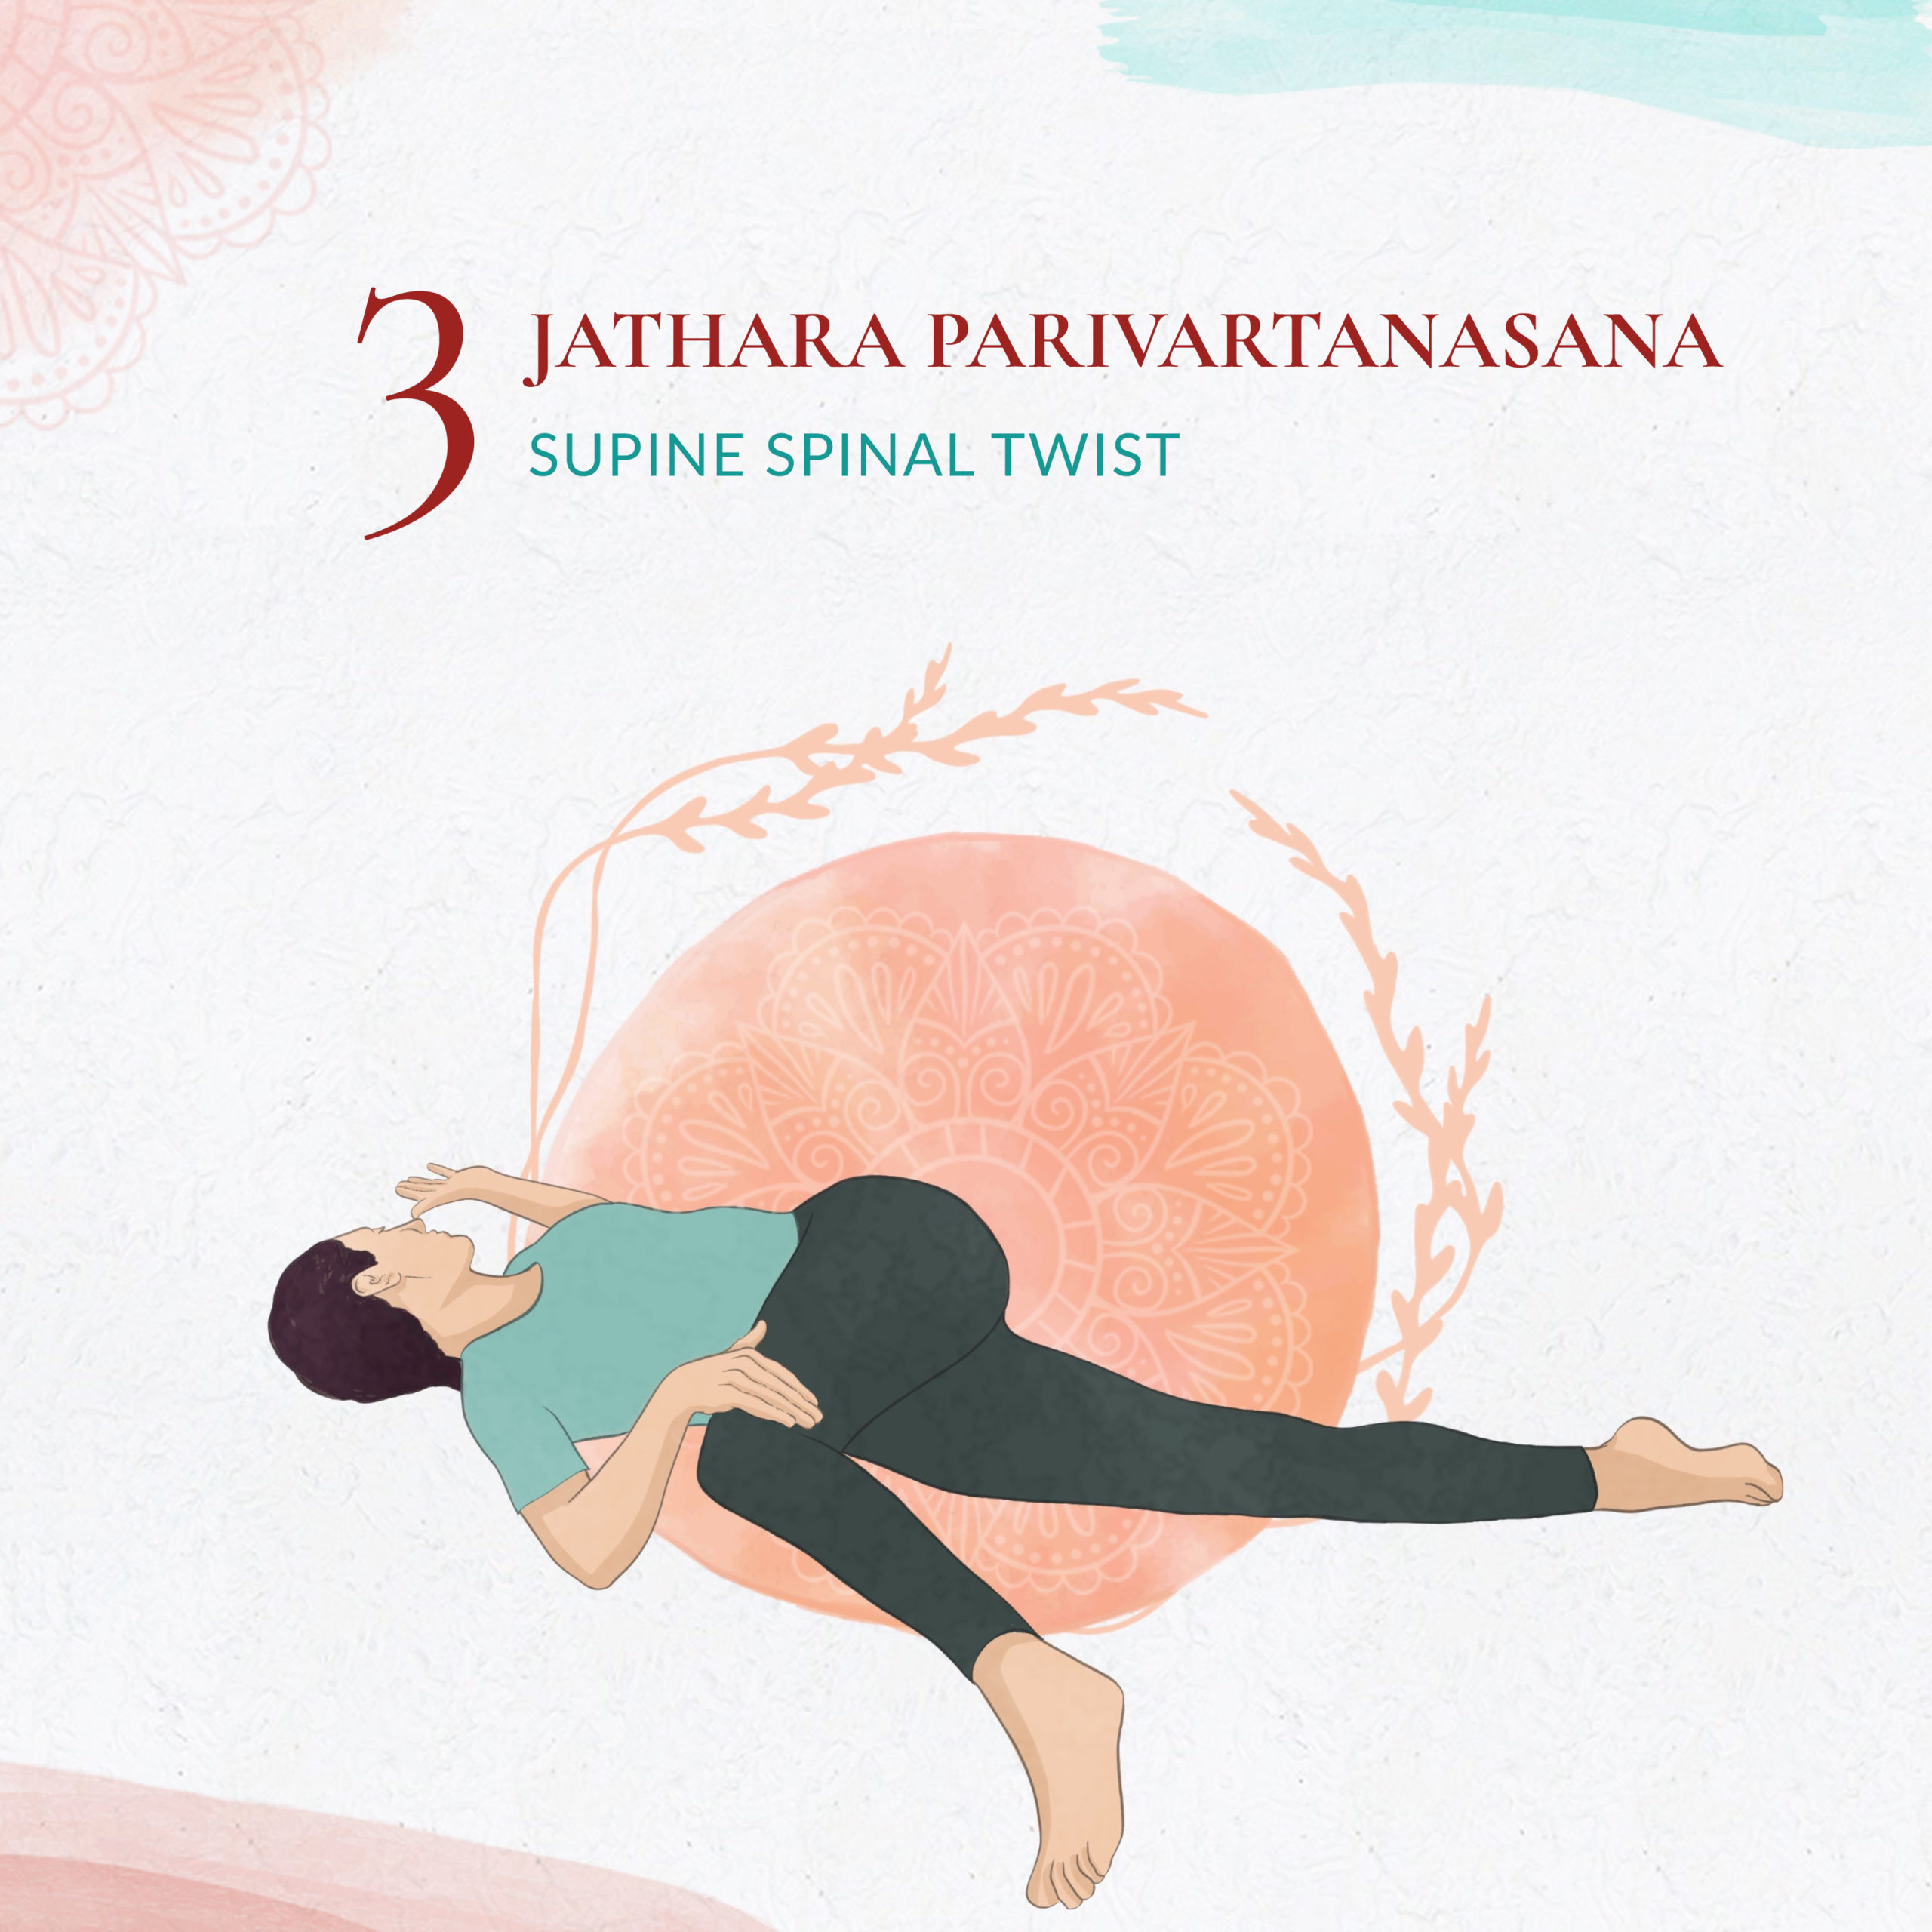 Jathara Parivartanasana - Supine Spinal Twist